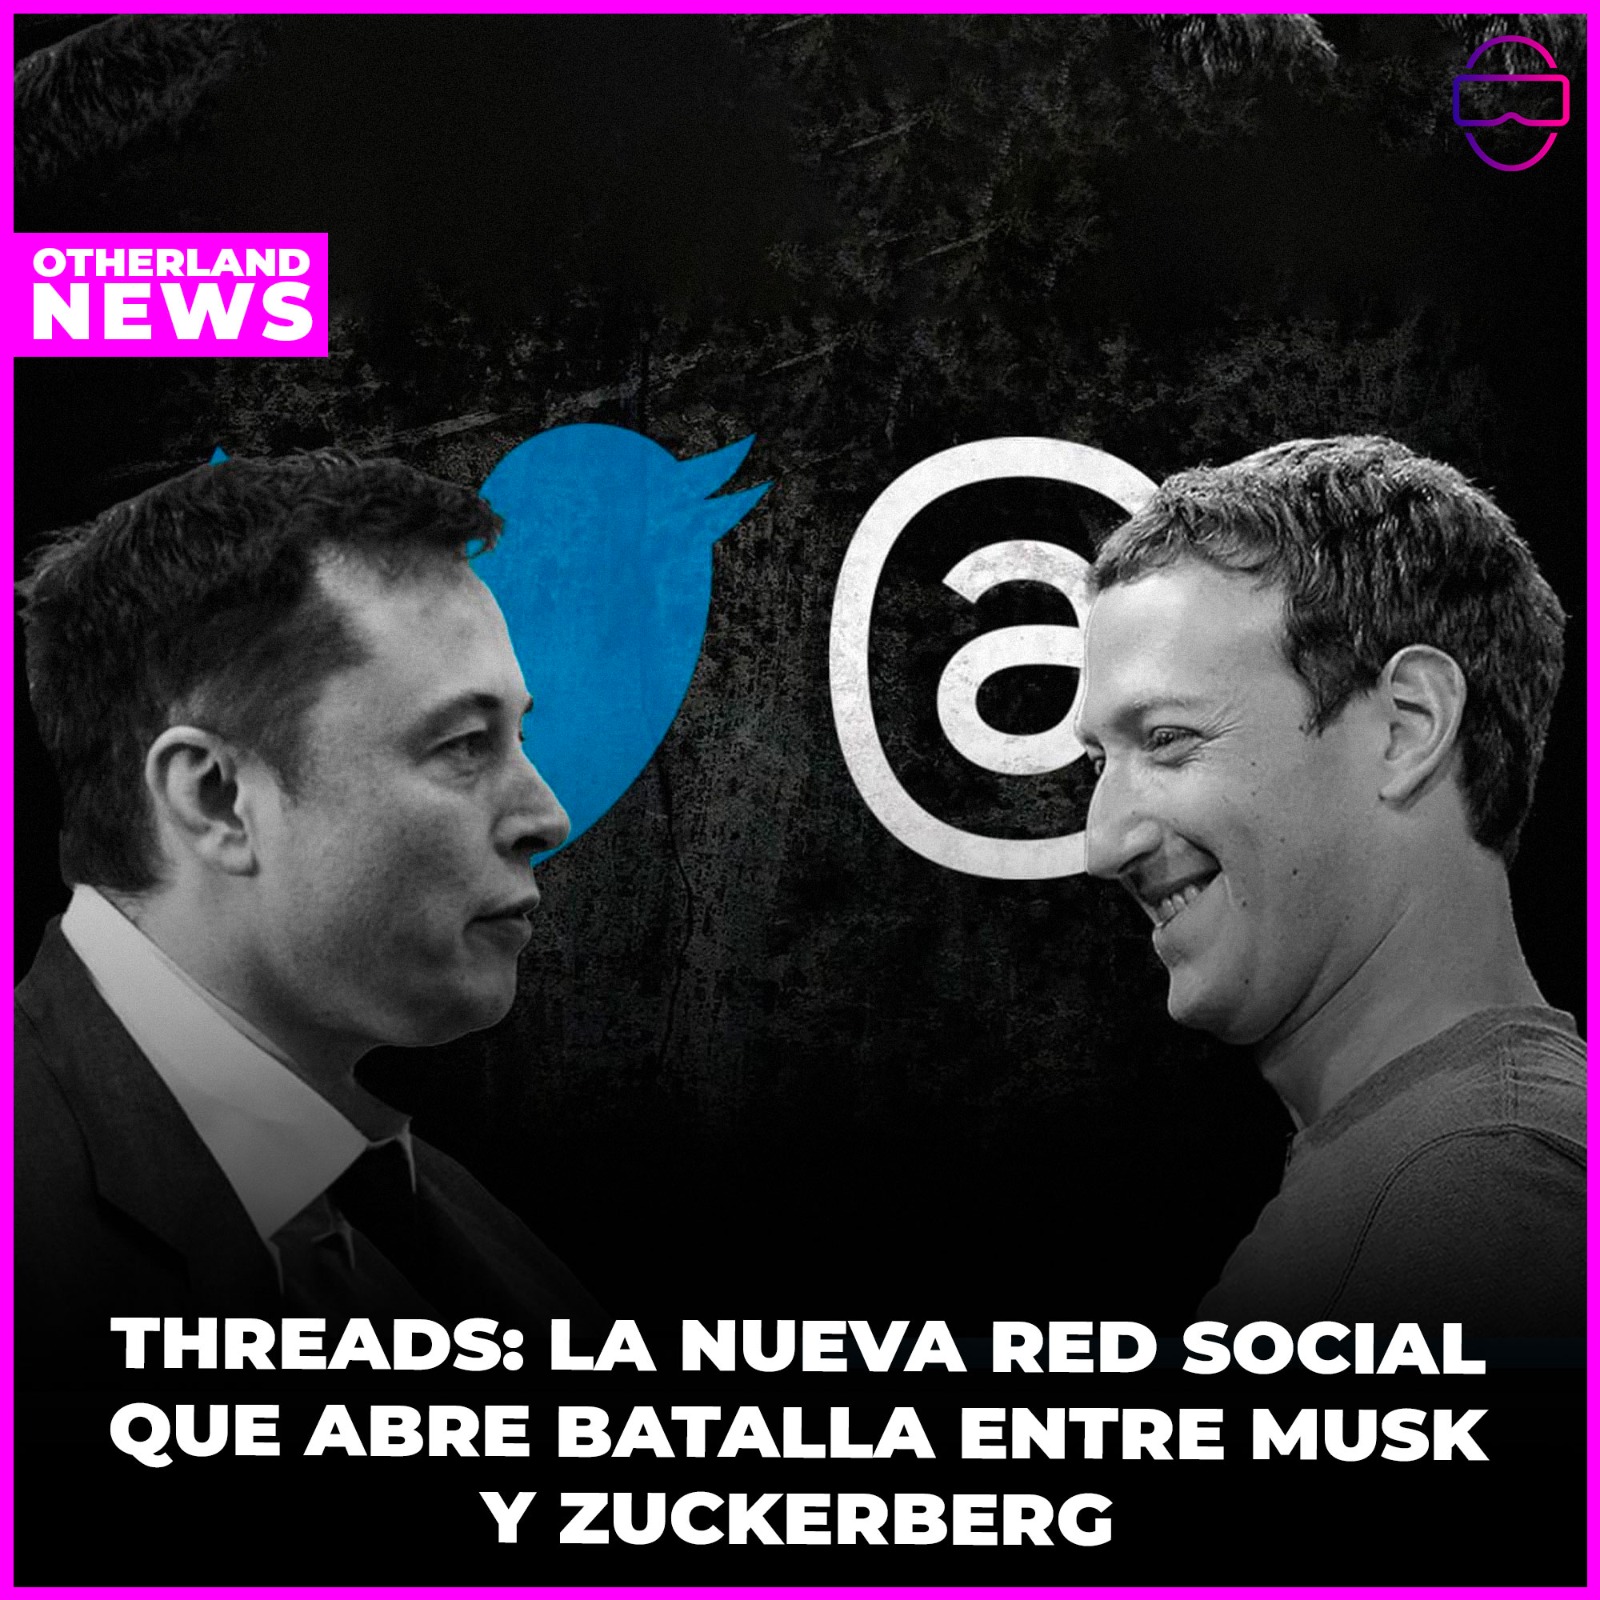 Threads: La nueva Red Social de Zuckerberg que amenaza a Twitter, el ardiente comentario de Elon Musk y la Intrigante contratación de Yaccarino ¡Descubre las últimas tendencias digitales!